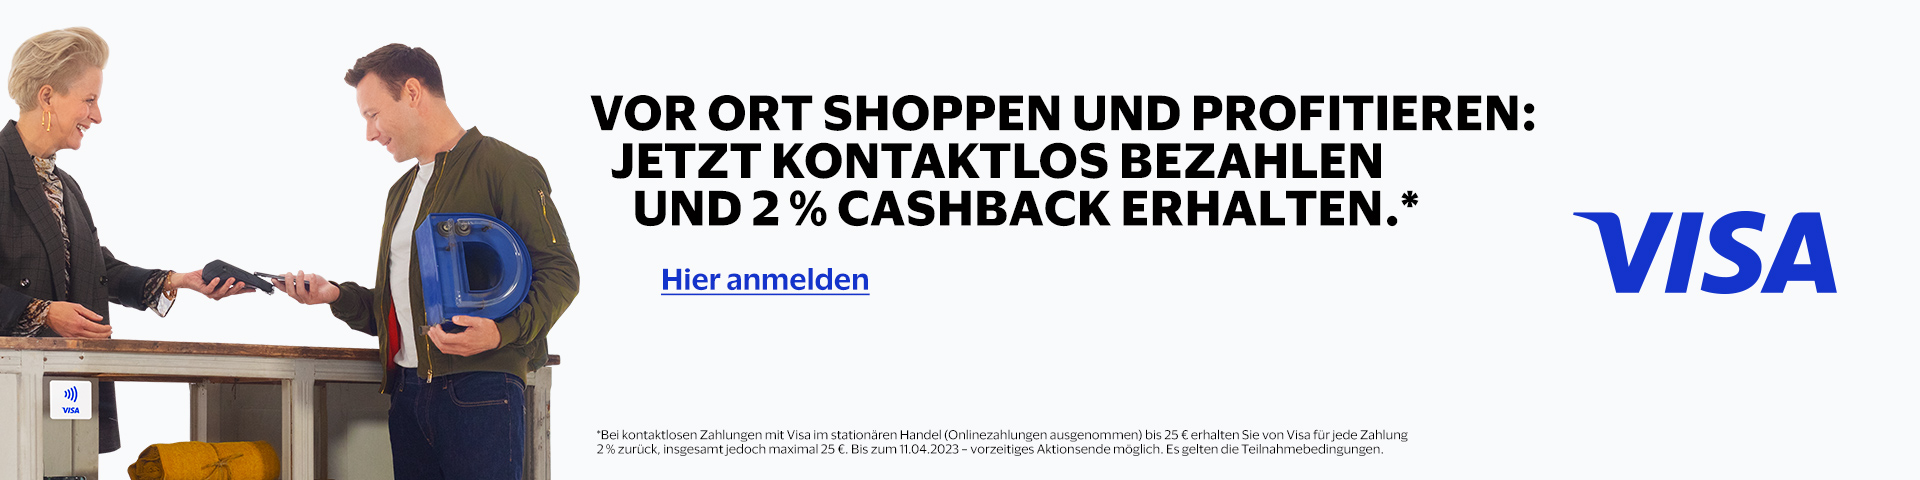 2 % Cash Back Visa Aktion